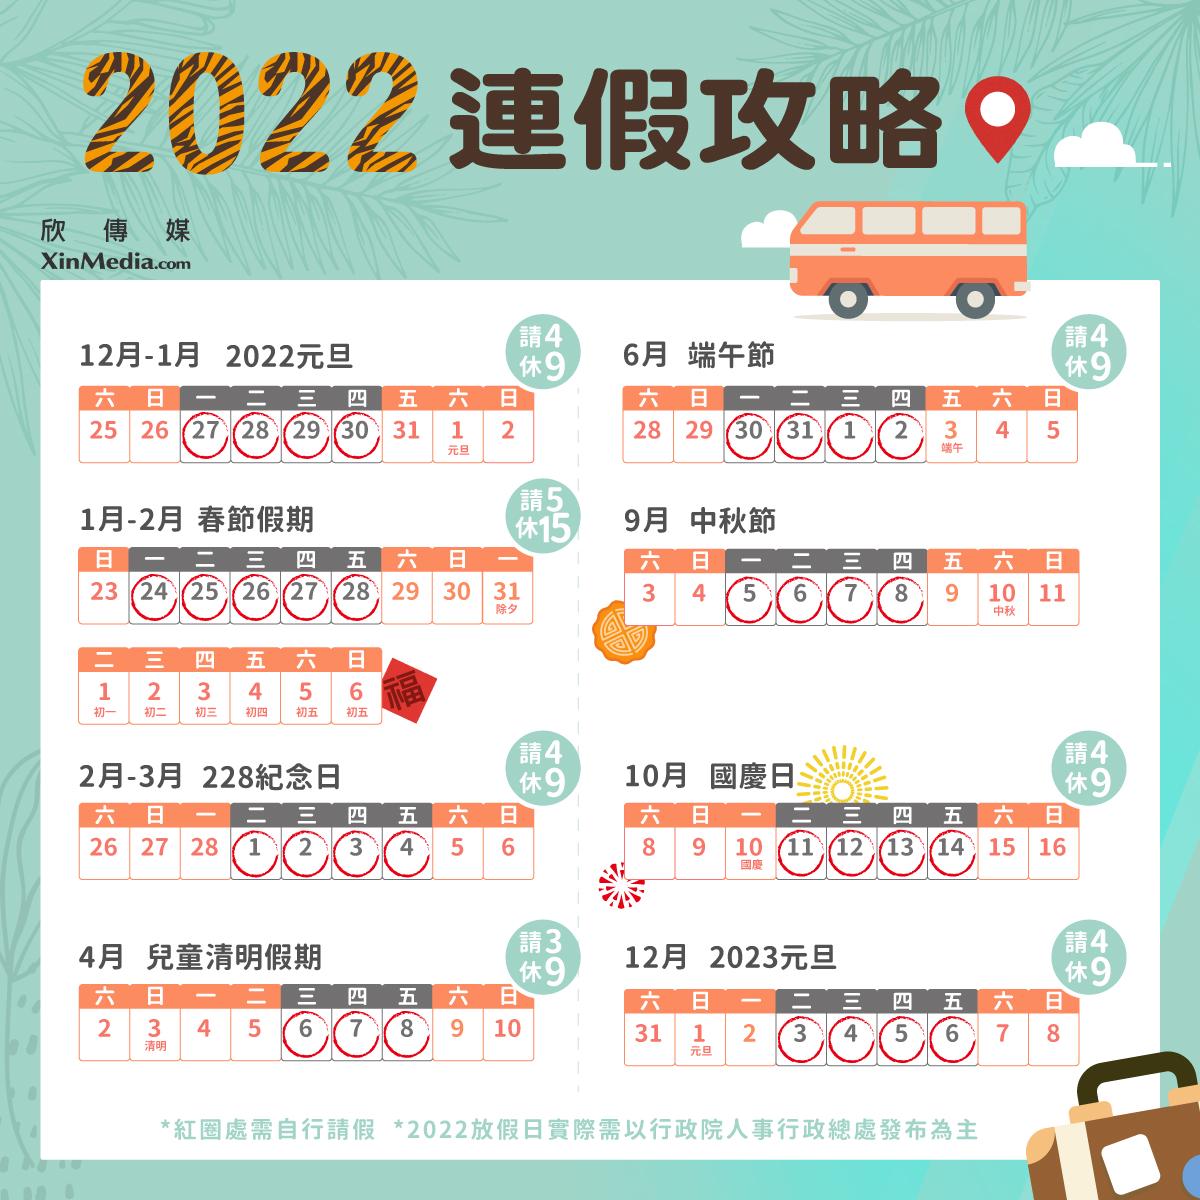 22連假攻略懶人包 8大連休假期在台灣該怎麼請假該怎麼玩 這篇通通告訴你 欣傳媒